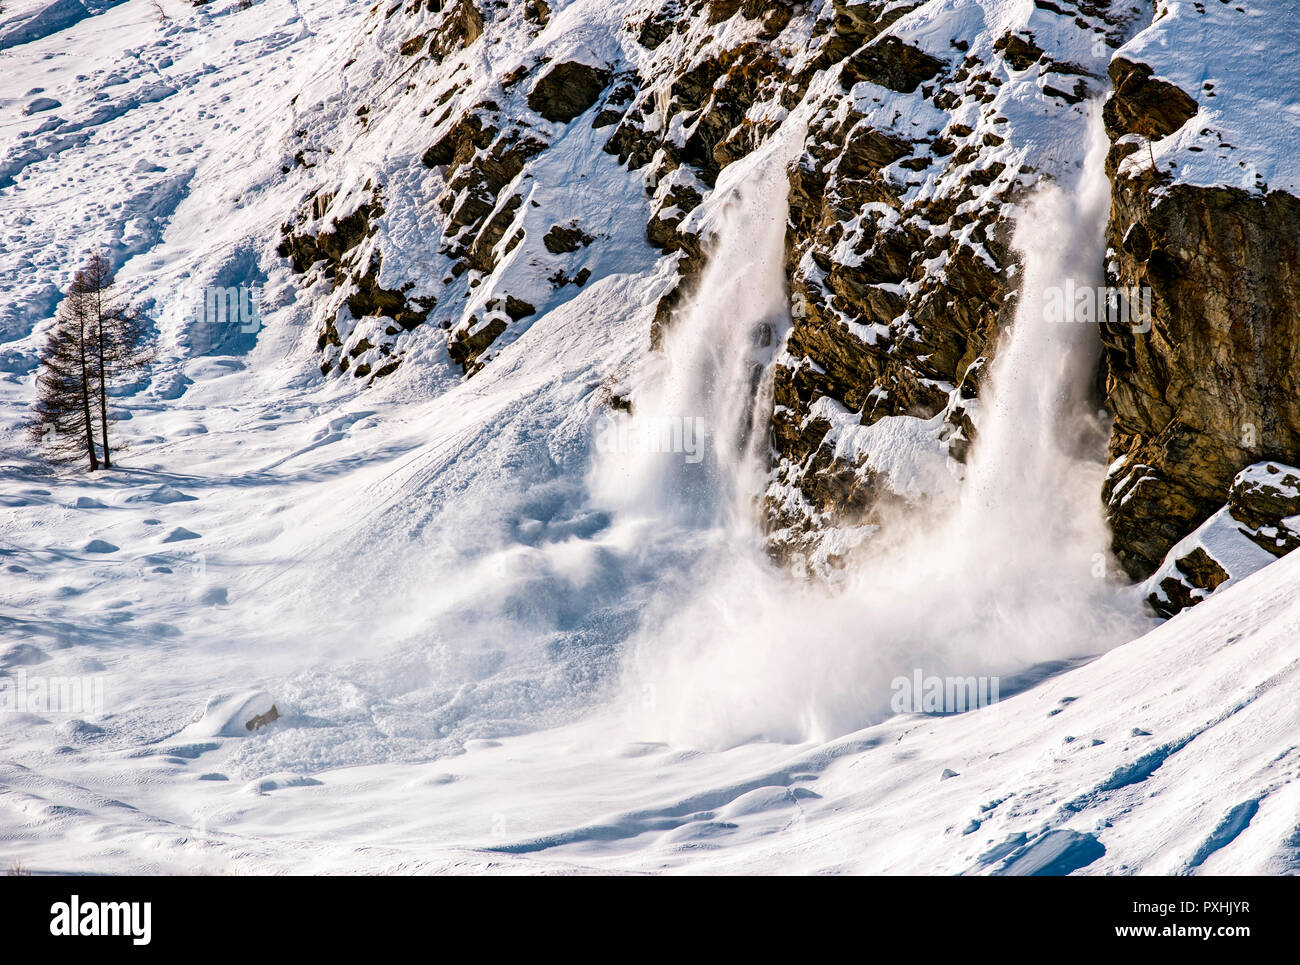 Italien Valle d'Aosta - Aufgrund der großen Menge an Schnee auf den Pisten von Val di Rhemes Berge, manchmal ist es möglich, reale temporäre Schnee und Eis fällt bis ins Tal zu beobachten. Stockfoto